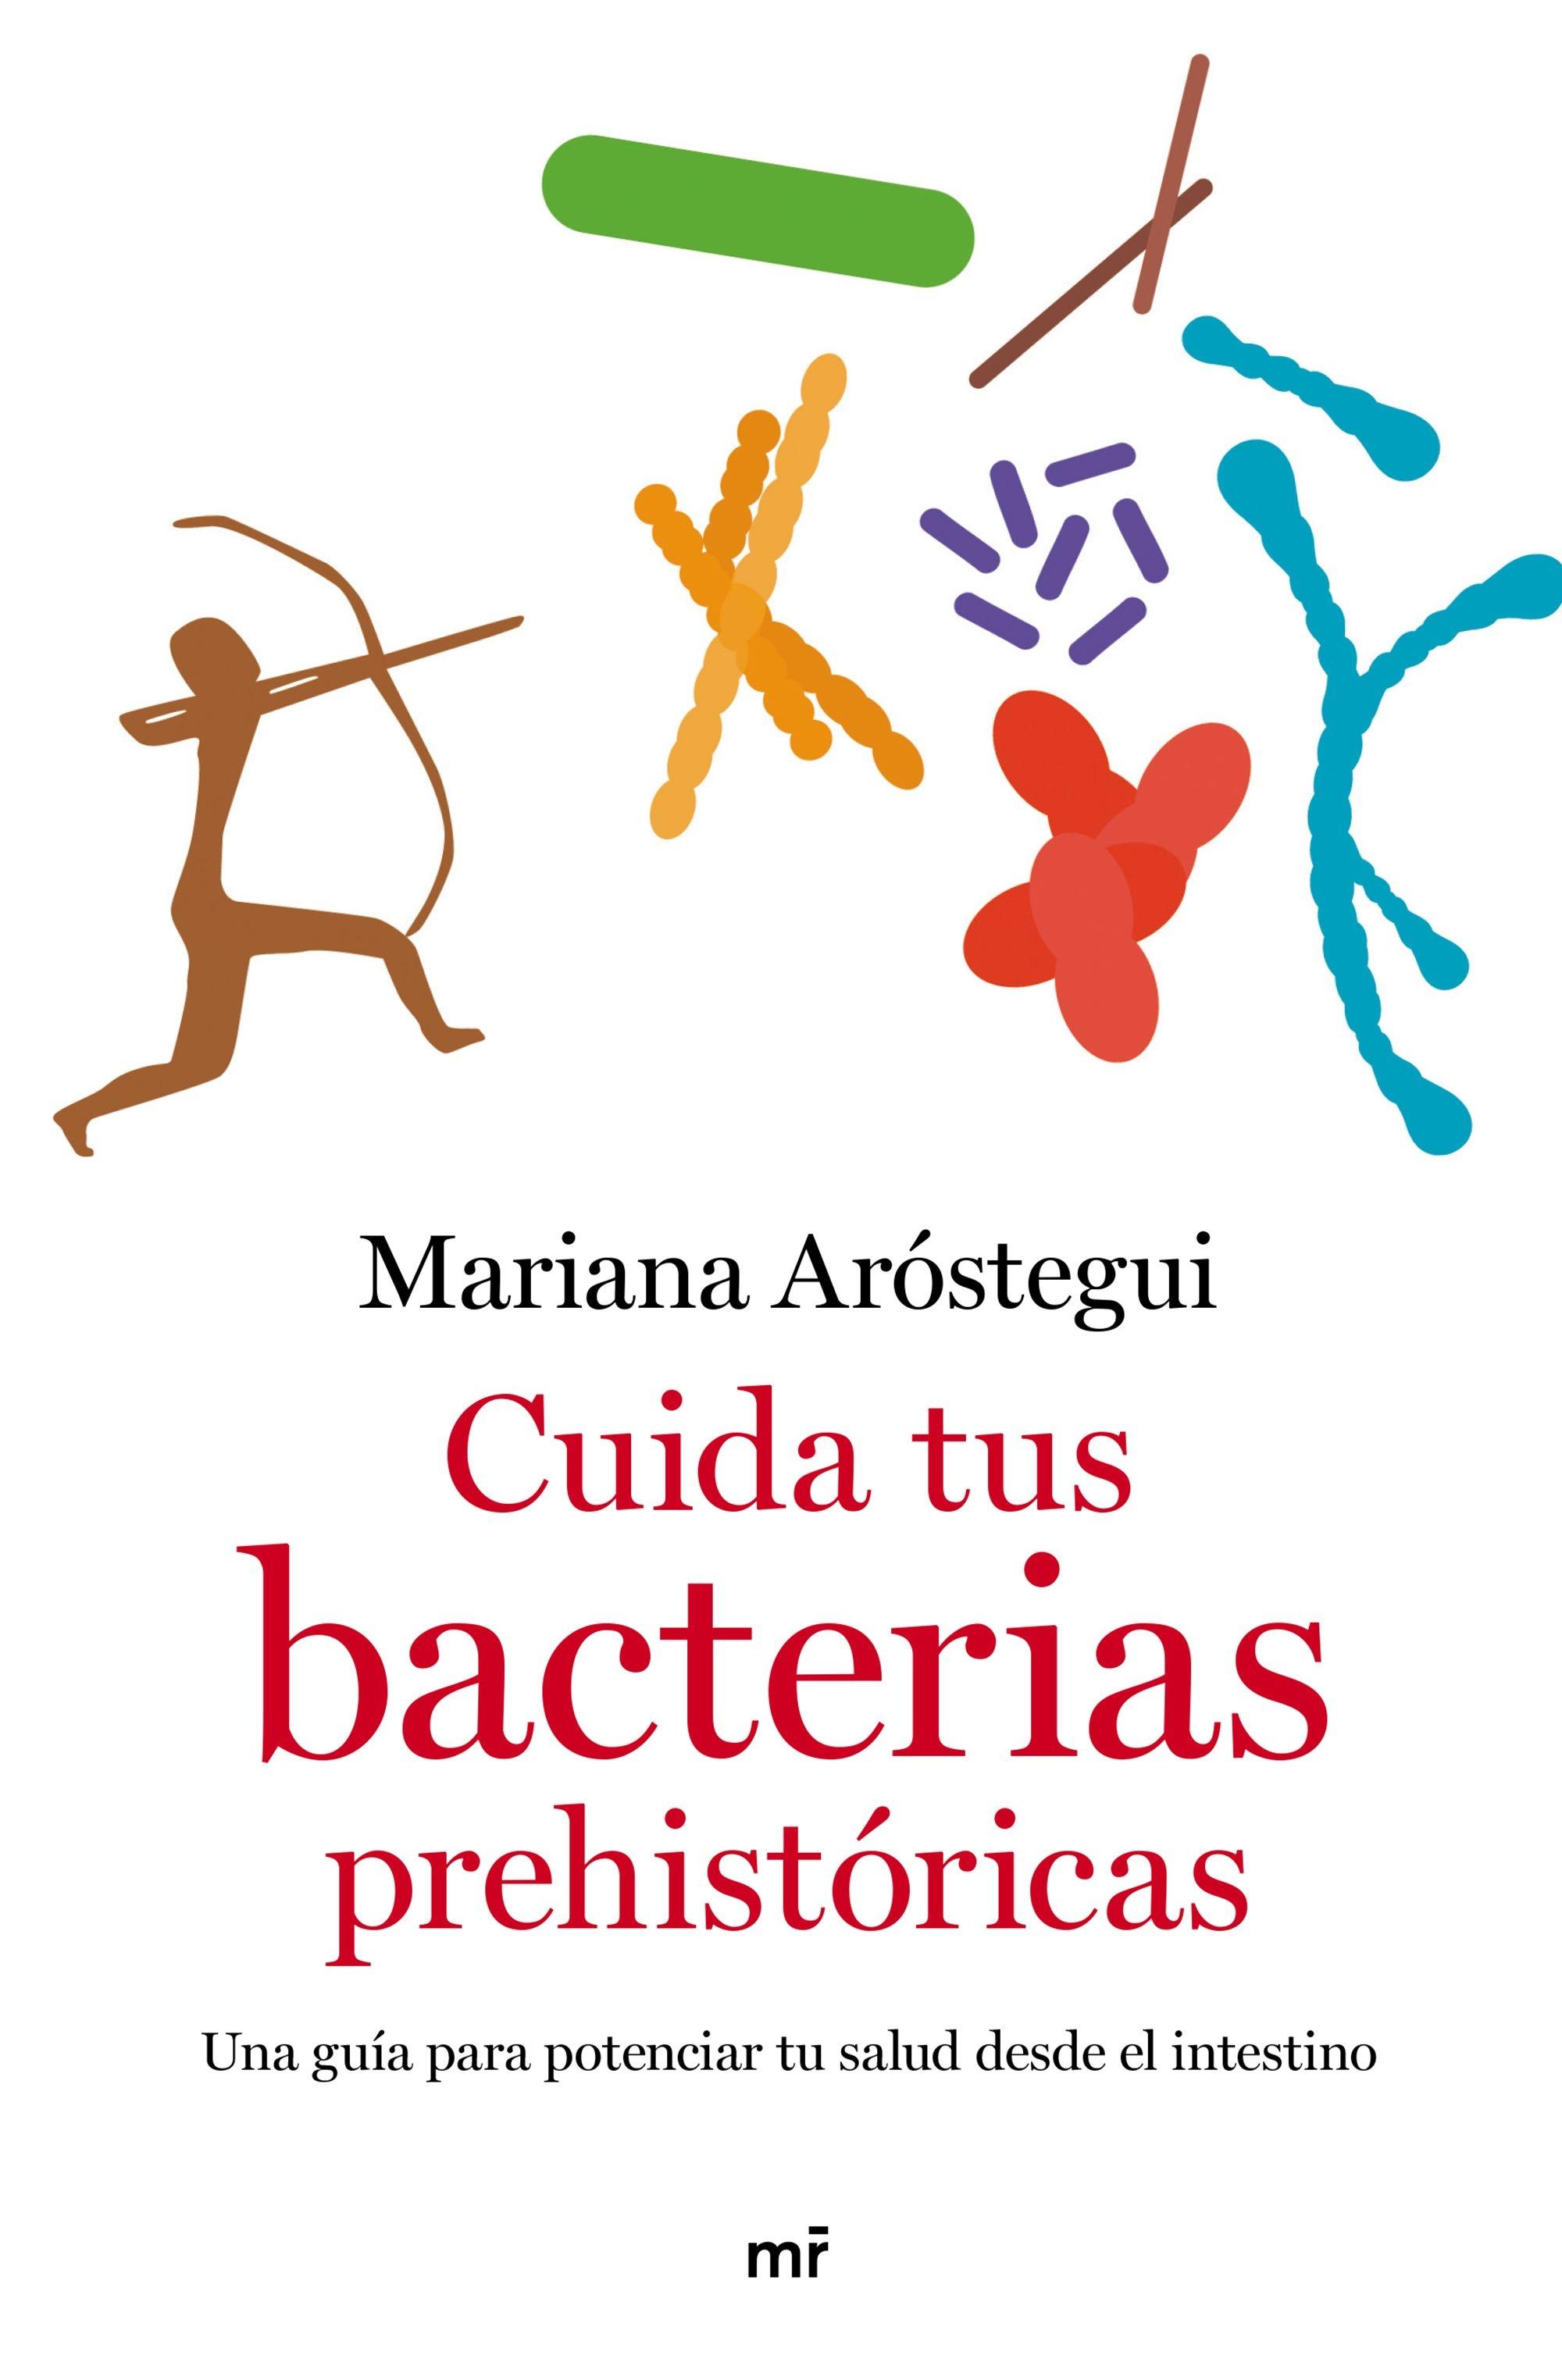 Cuida tus bacterias prehistóricas "Una guía para potenciar tu salud desde el intestino"